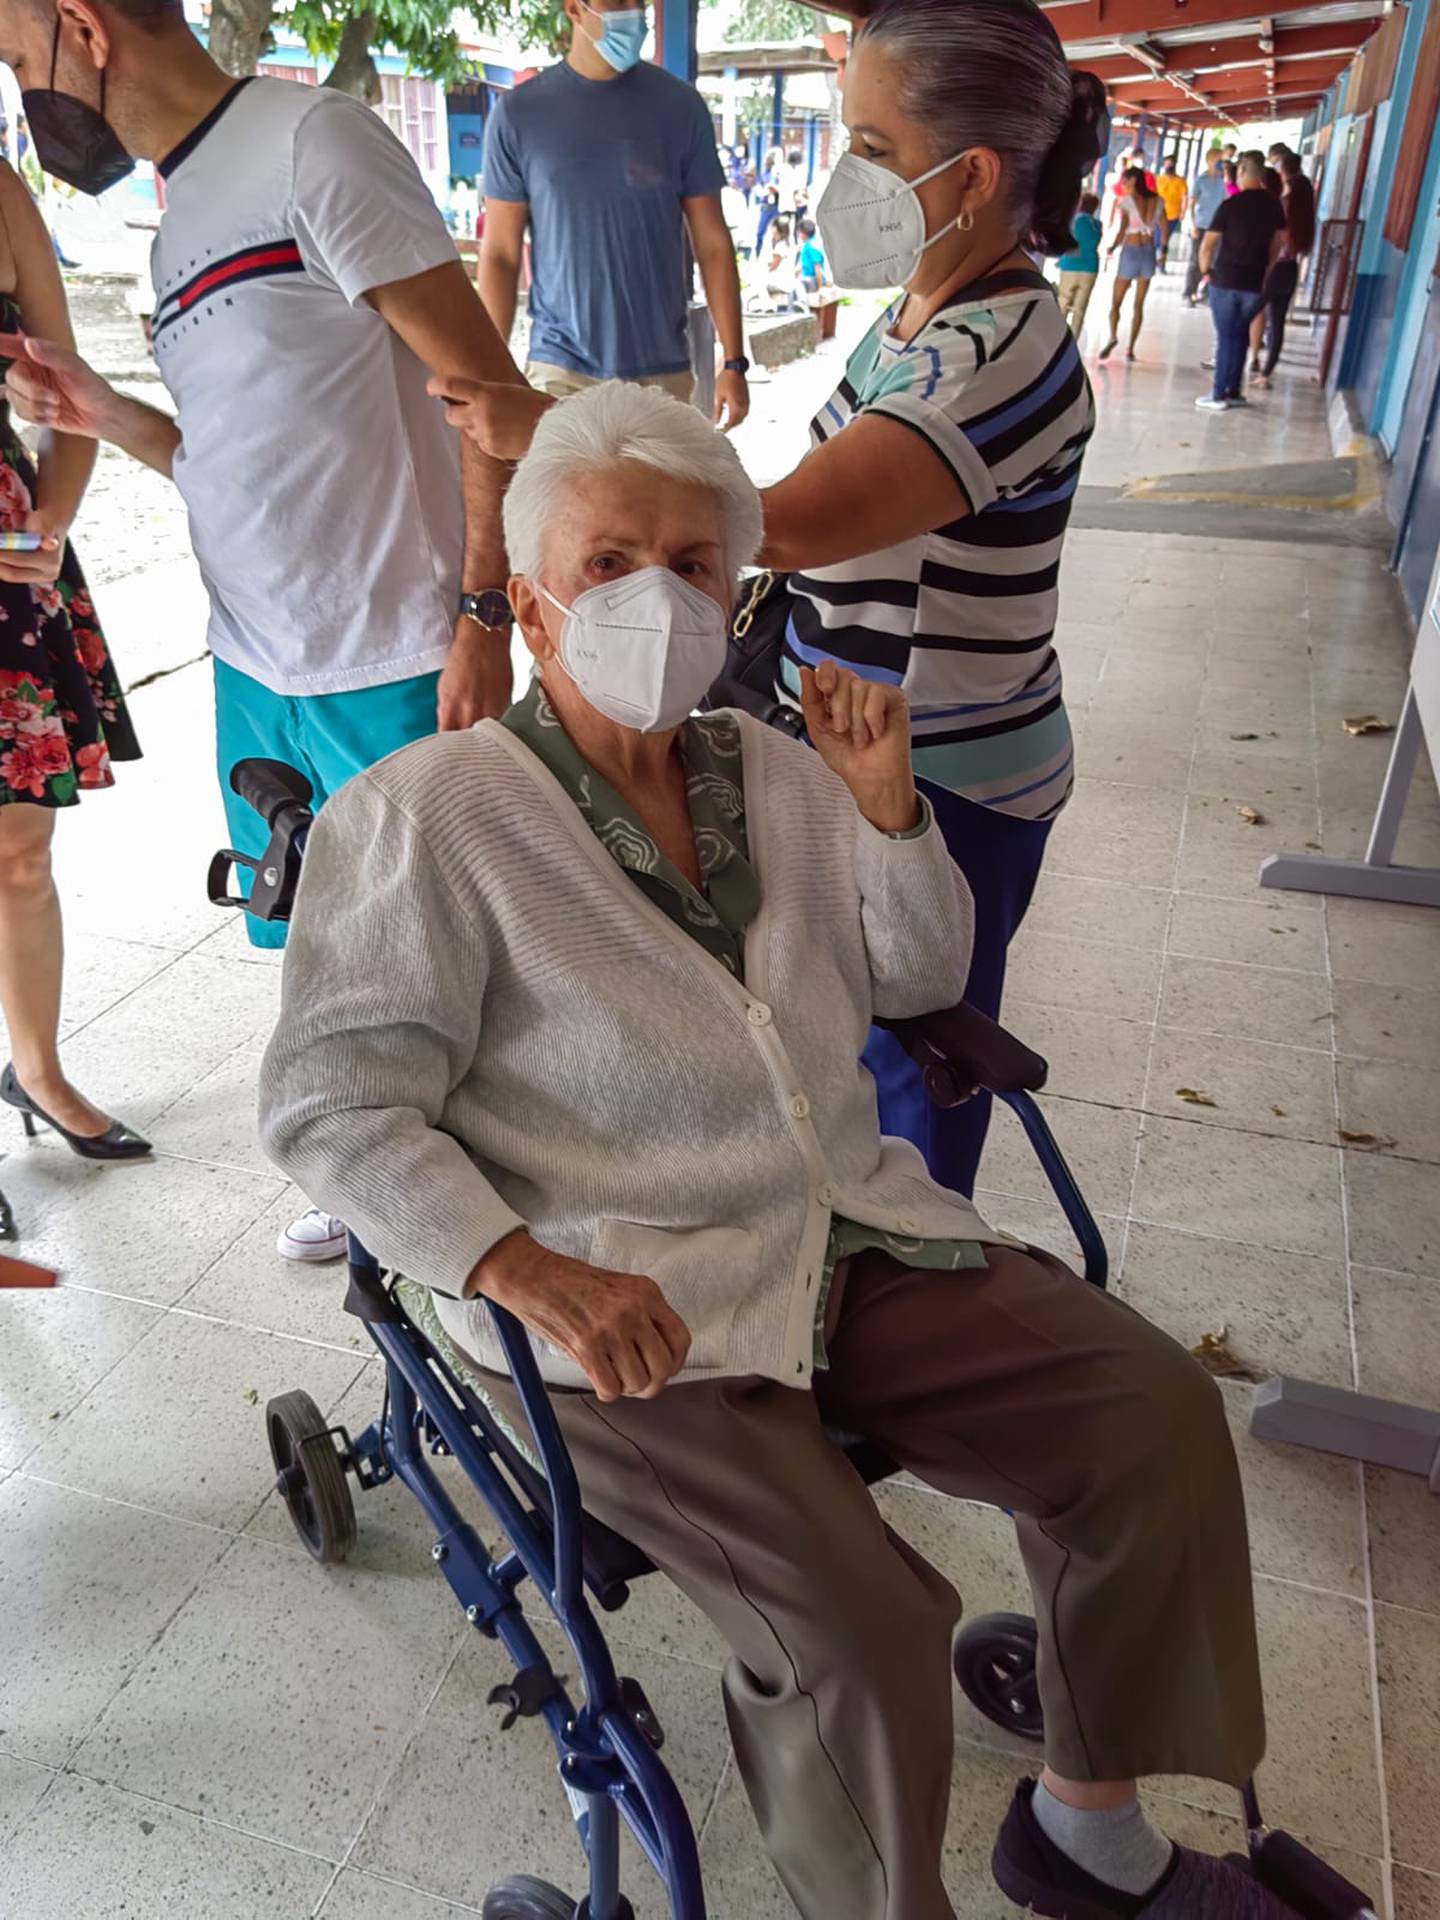 María Marta Gutiérrez, quien a sus 81 años se puso su mascarilla, cumplió con los protocolos higiénicos y le dijo a su familia: “Vamos a votar que la patria nos llama”.